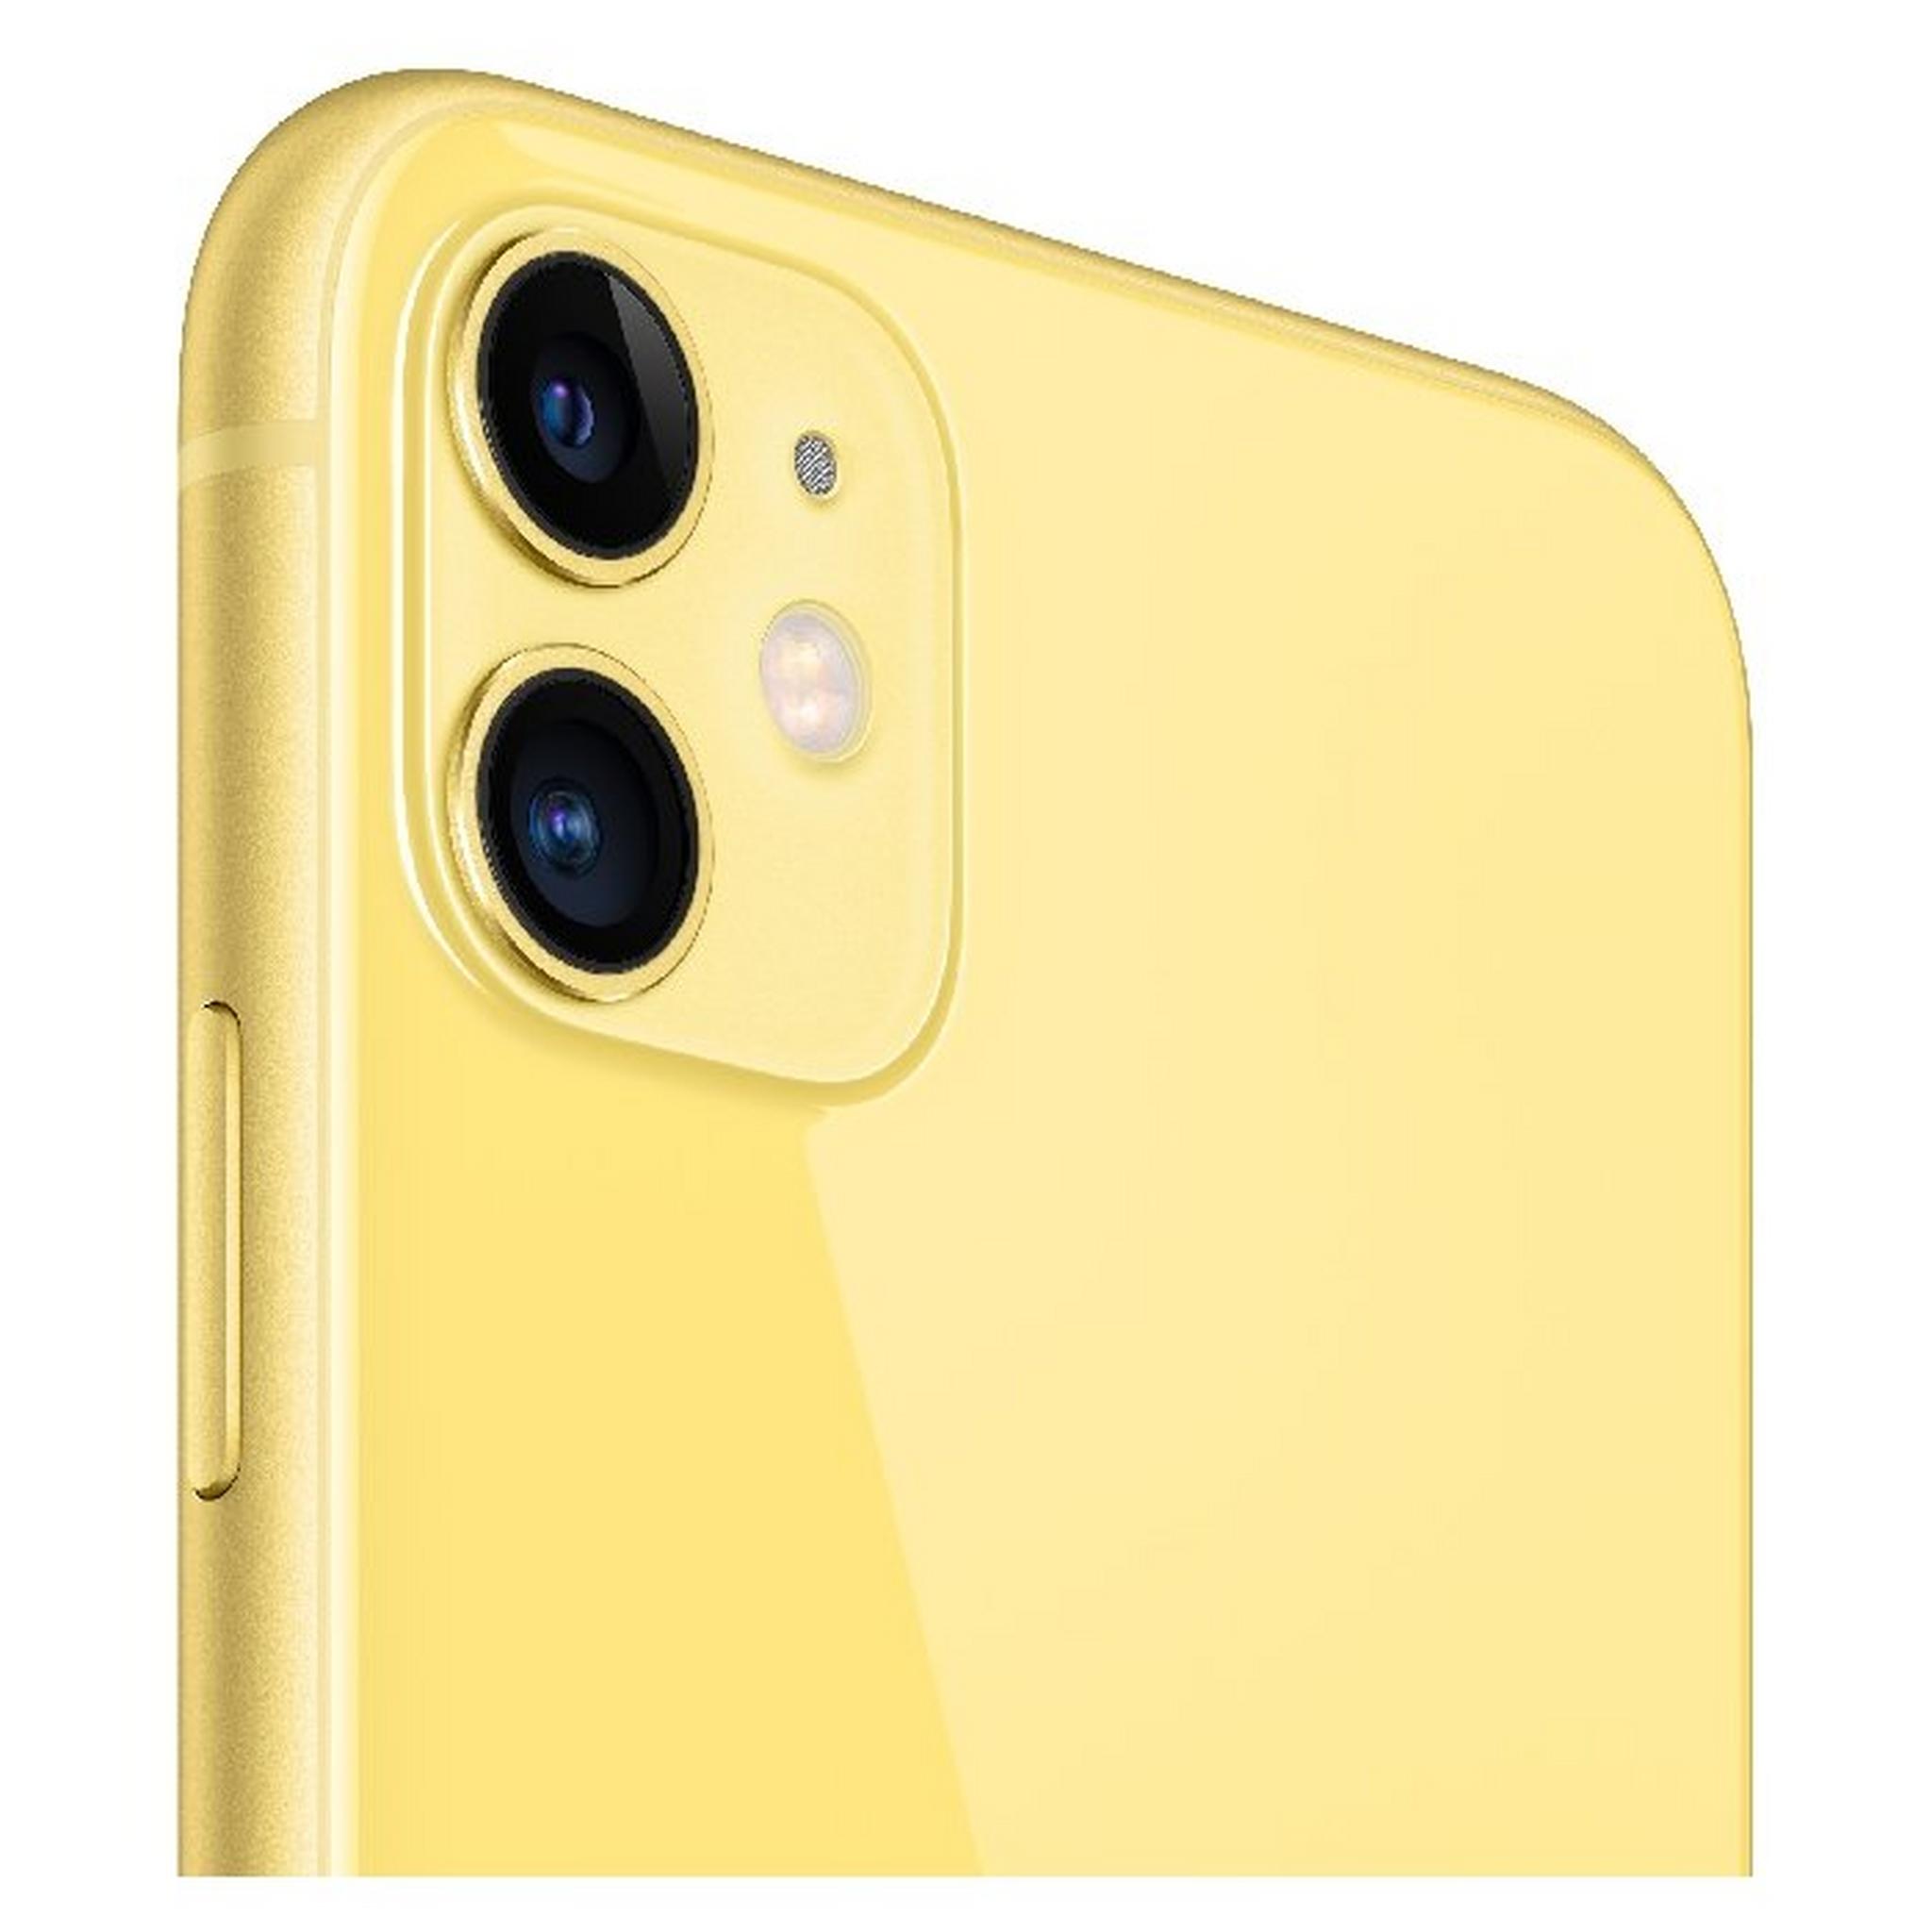 هاتف أبل أيفون ١١ بسعة ١٢٨ جيجابايت - أصفر